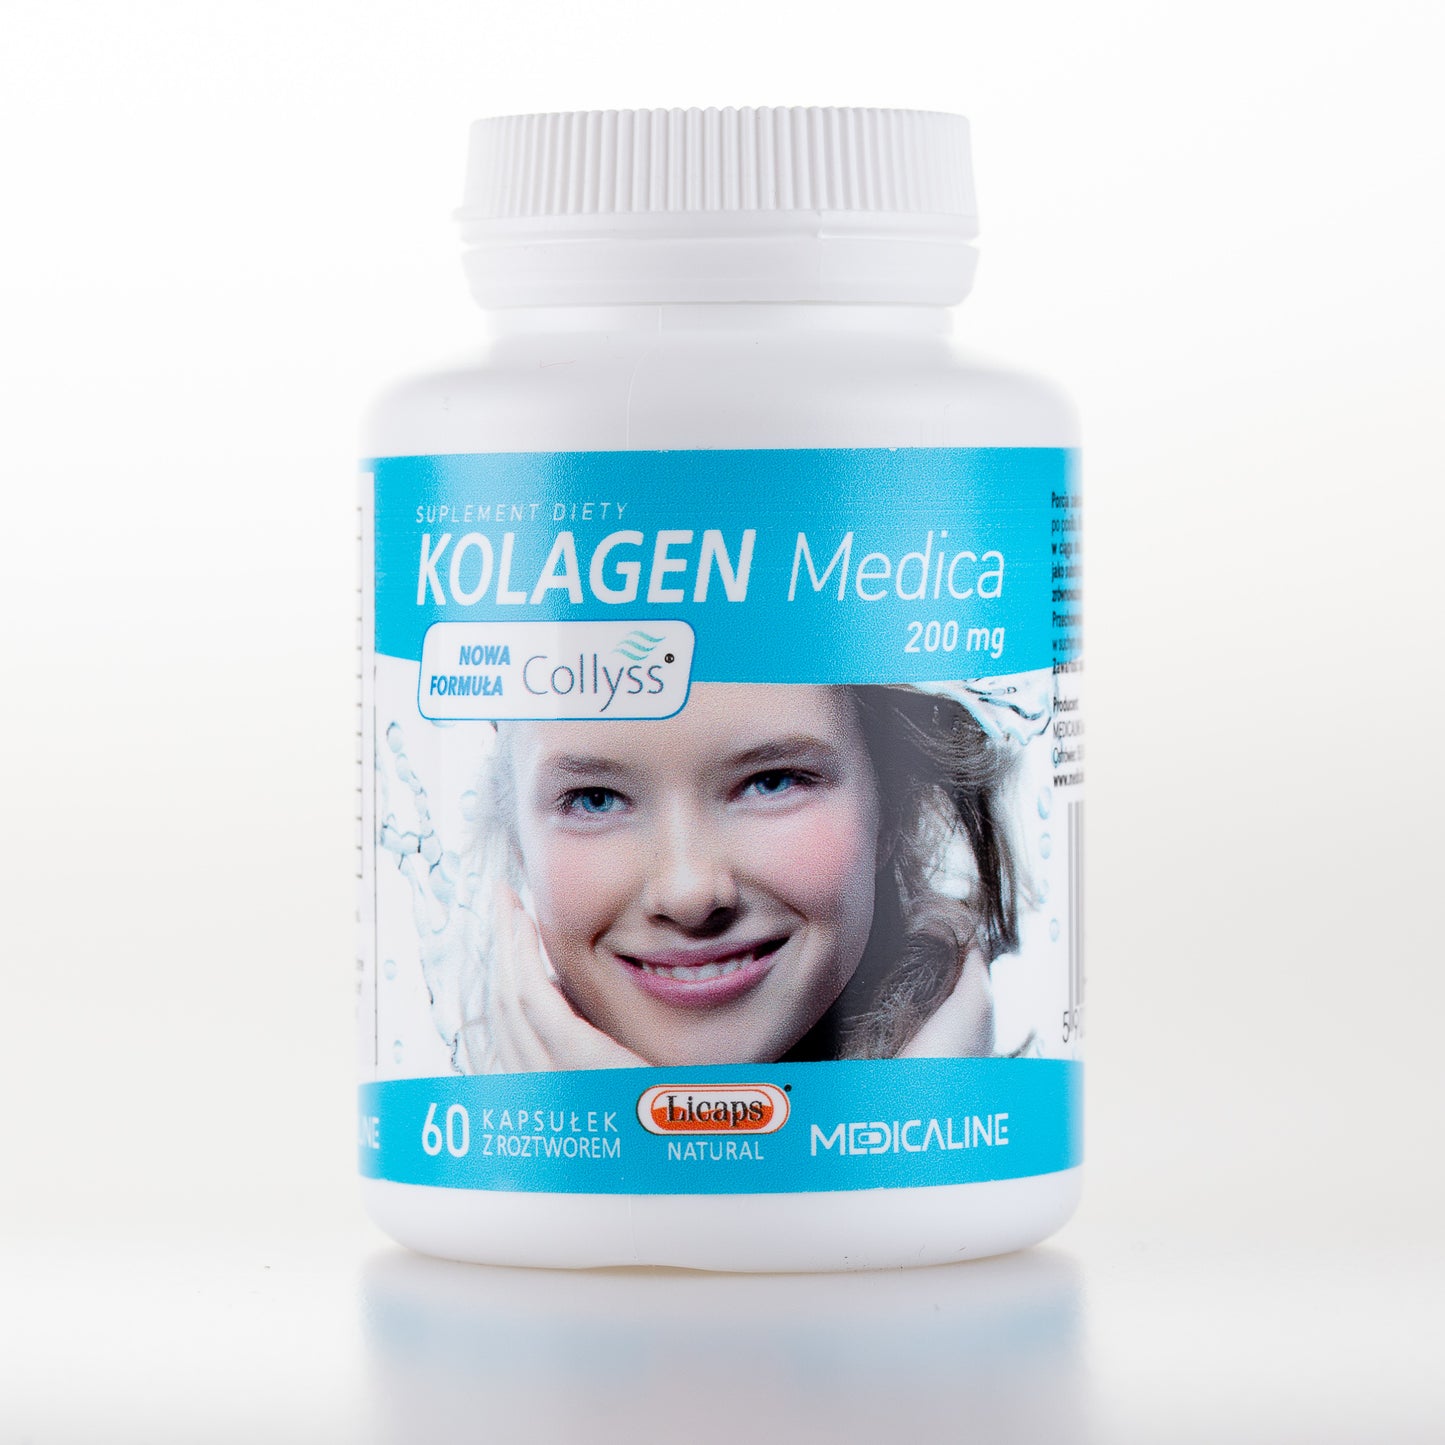 Collagen Medica 200 mg, 60LICAPS® capsules